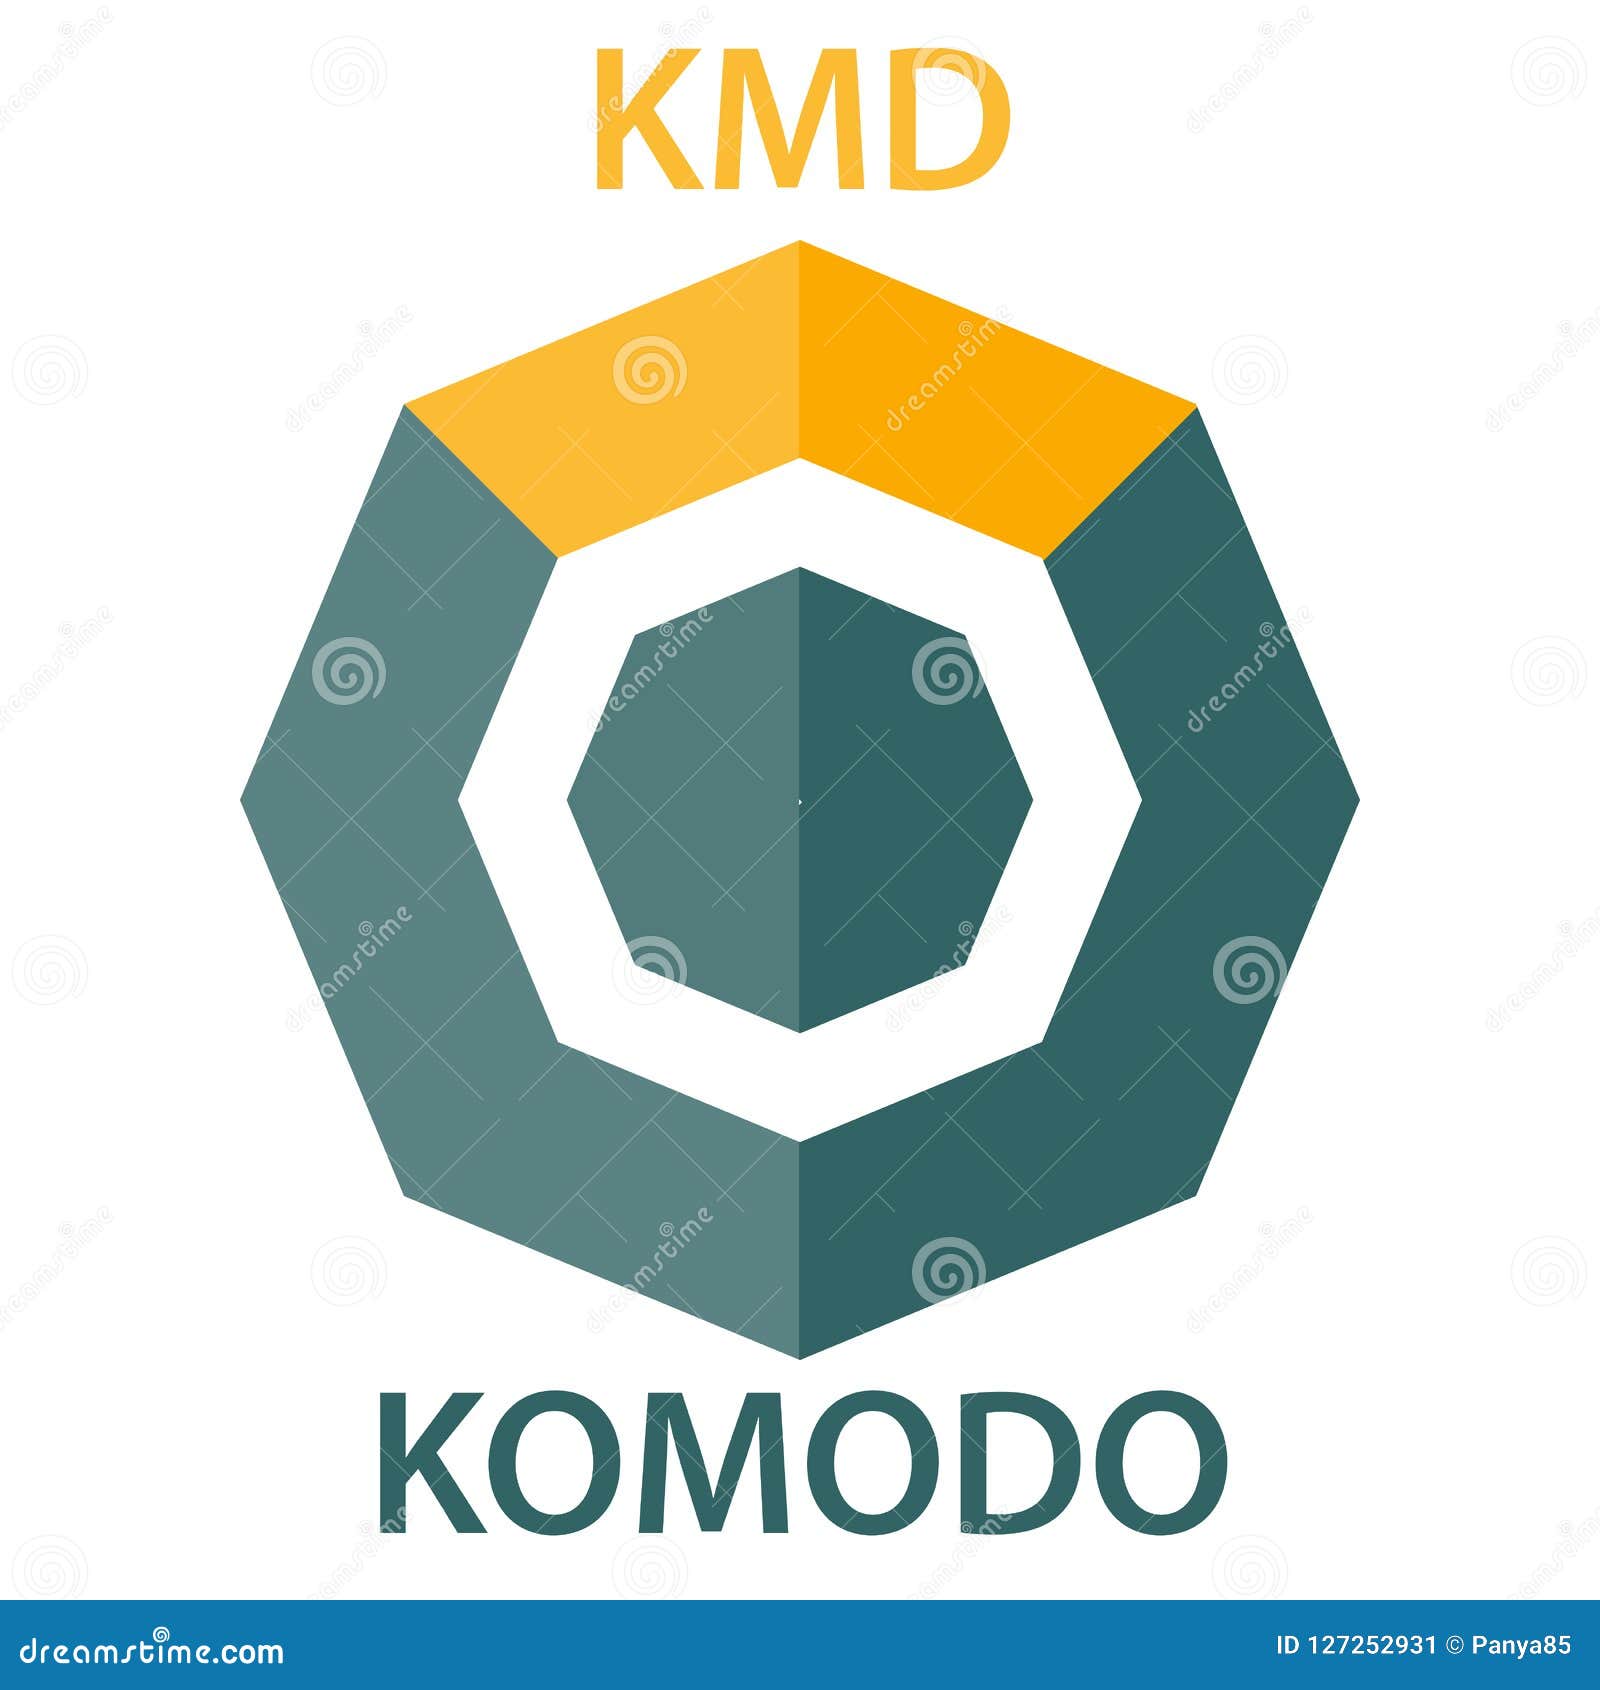 Komodo cryptocurrency wikipedia